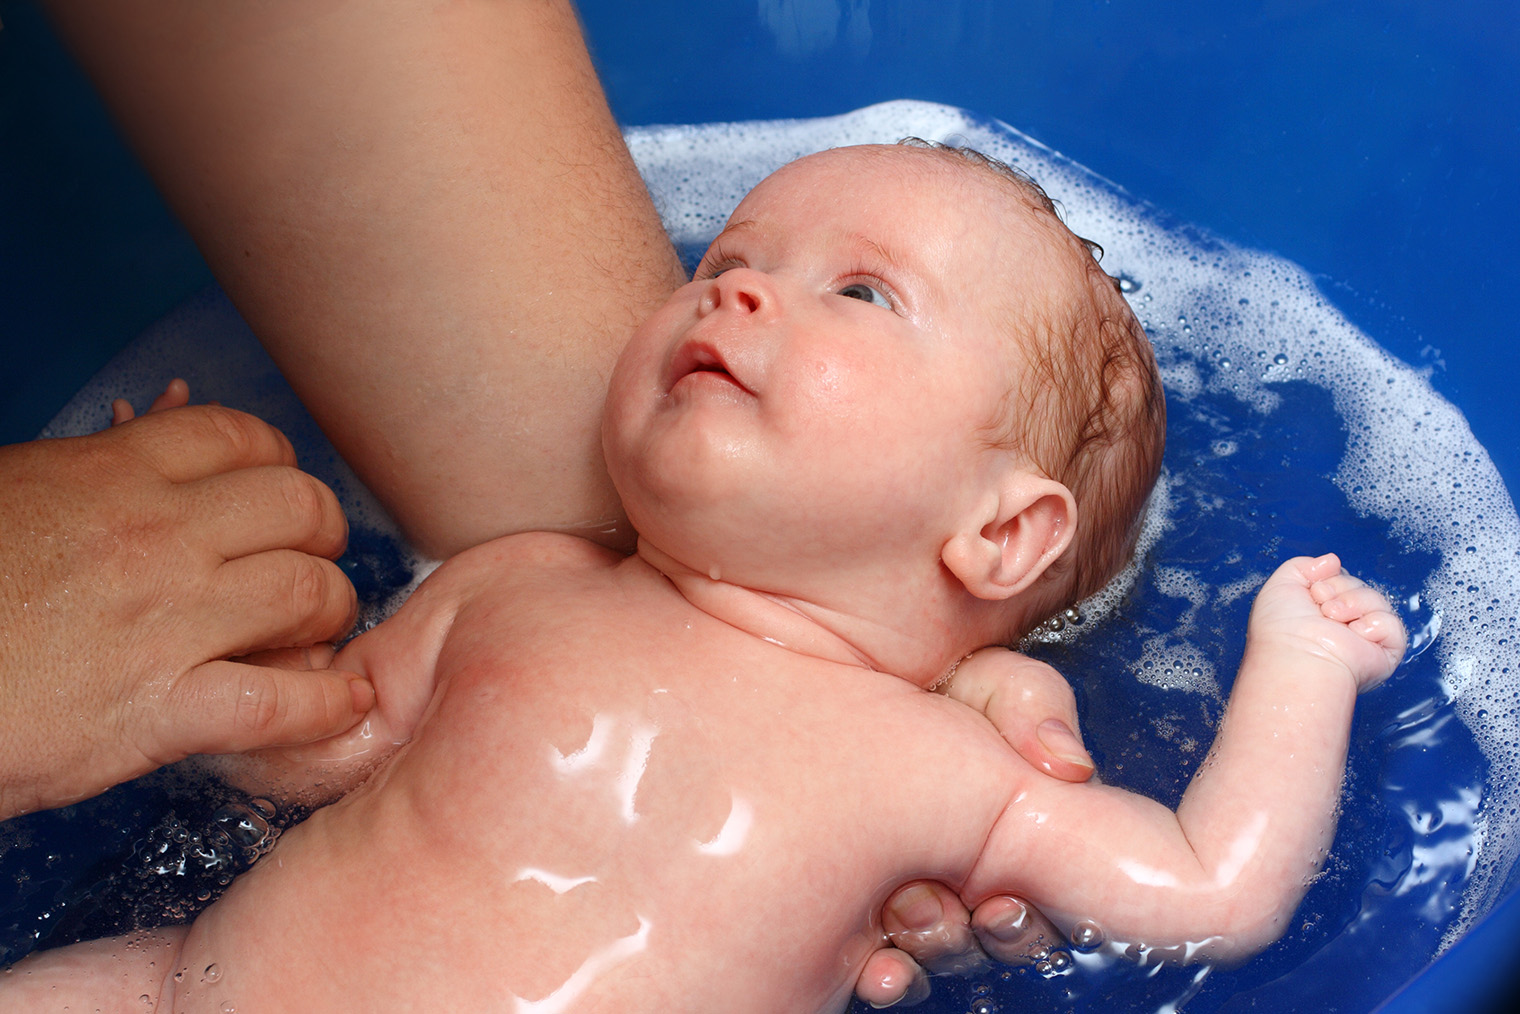 Во время купания в ванночке нужно завести руку за спину ребенка и постоянно поддерживать голову и шею. Чтобы крепче ухватить малыша, можно держать его за противоположное плечо. Вторая рука при этом будет свободна. Фотография: Mik122 / iStock